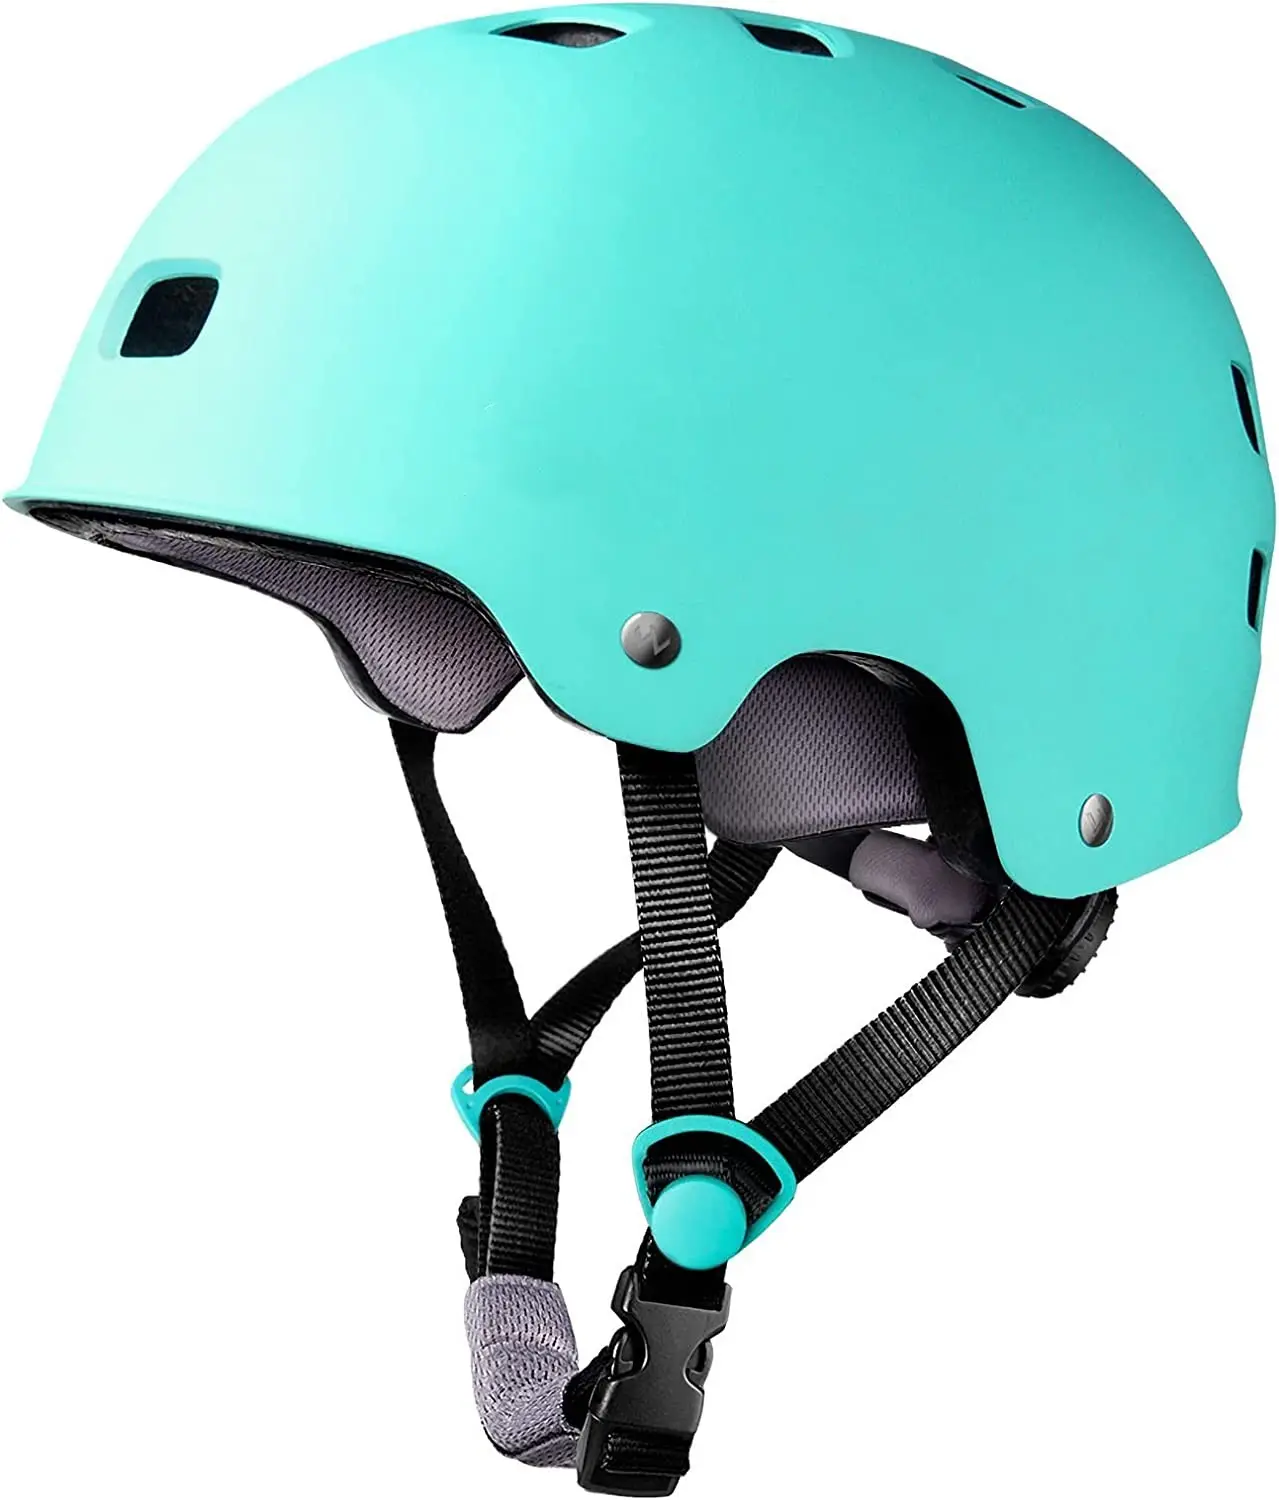 Adjustable Classic Electronic Scooter Skateboard Roller Skate Skater Helmet For Women Men Kids